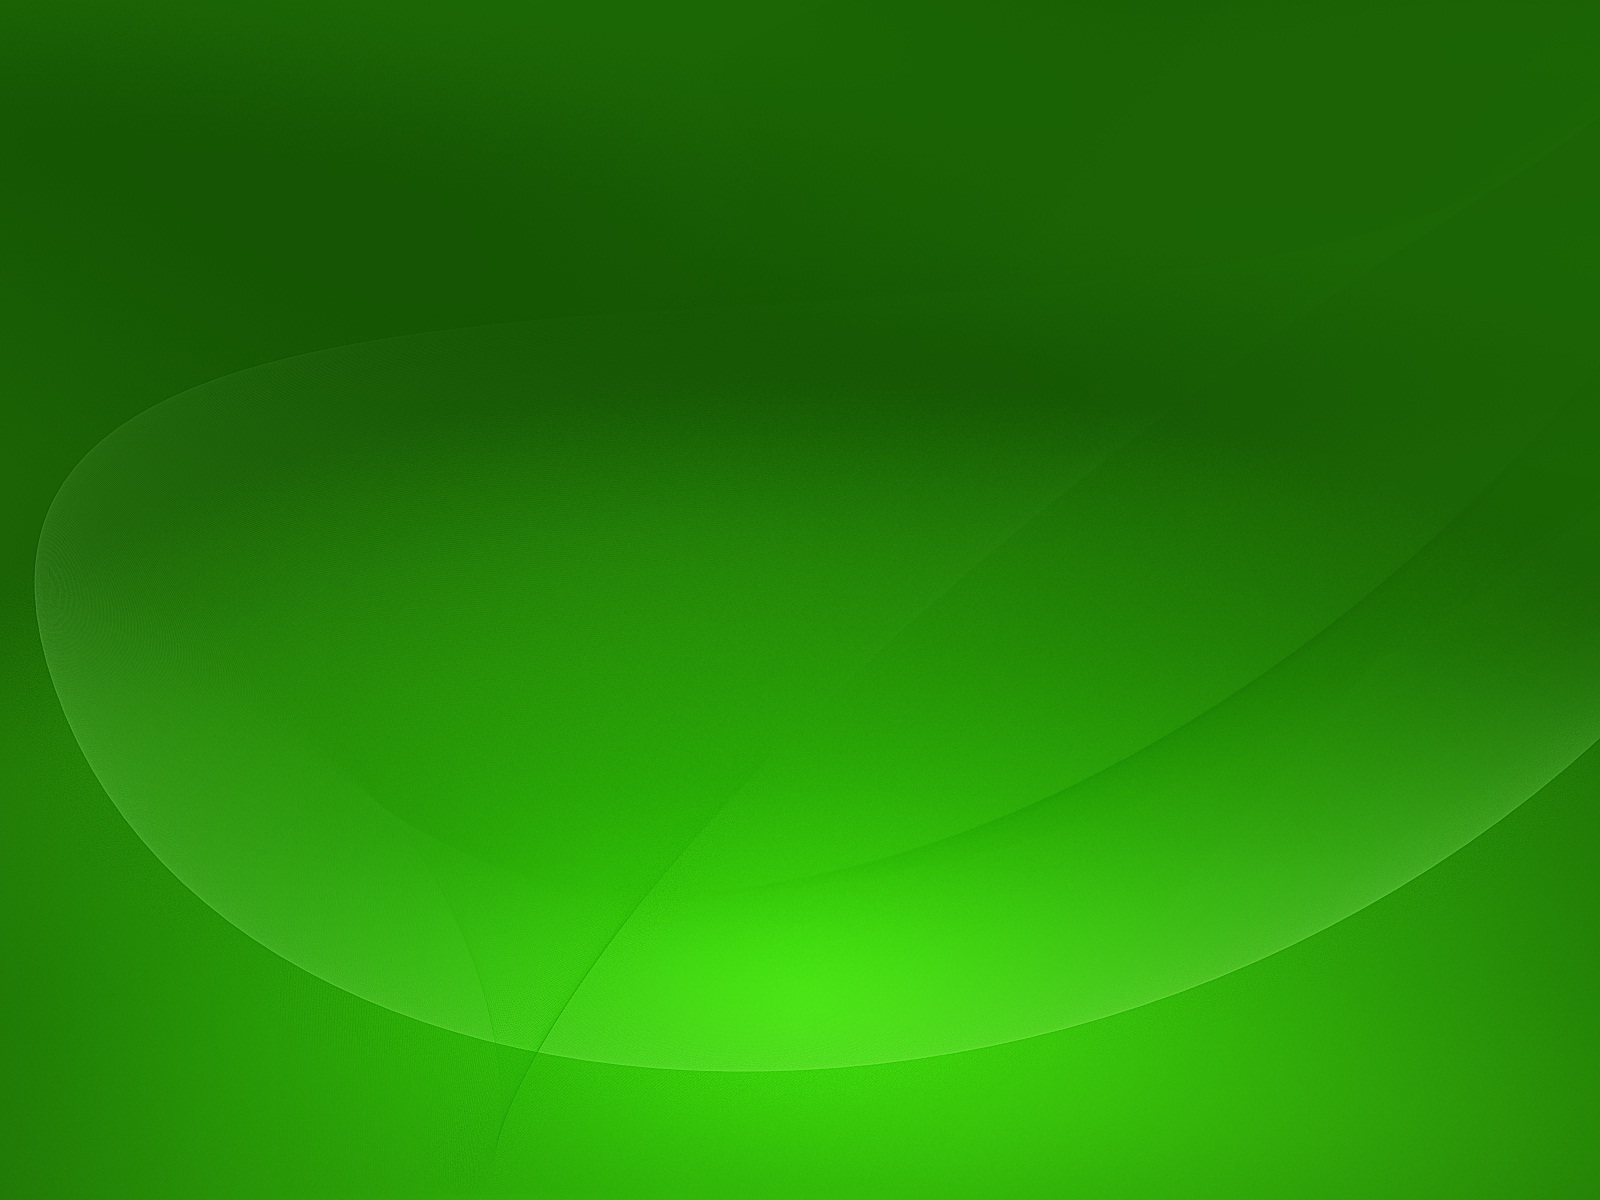 HD Green Desktop Wallpaper 3d